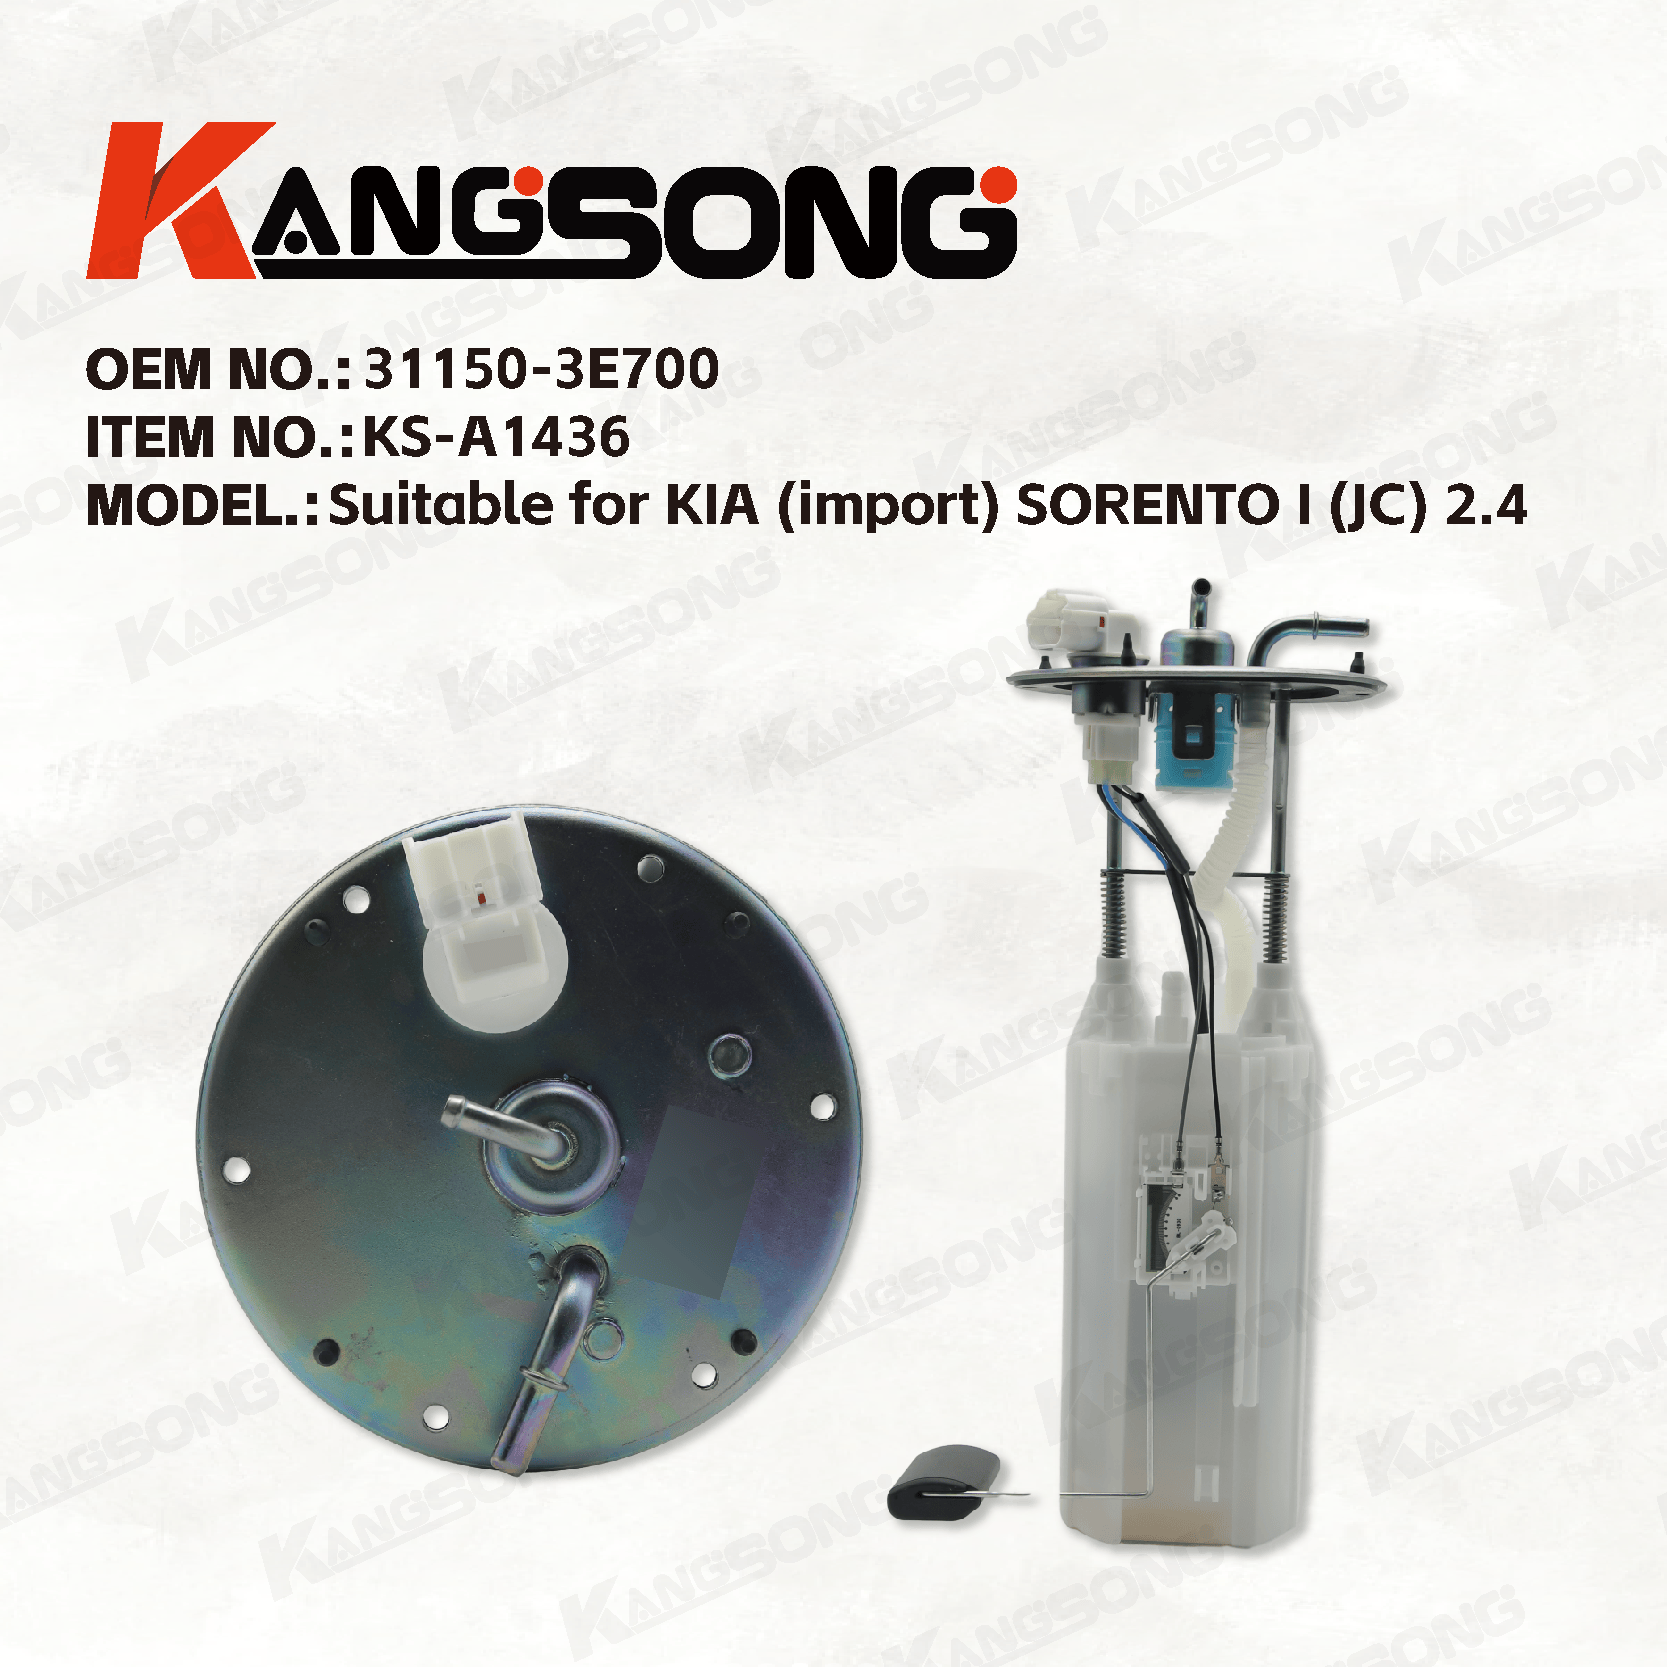 Applicable to KIA (import) SORENTO I (JC) 2.4/31150-3E700/Fuel Pump Assembly/KS-A1436